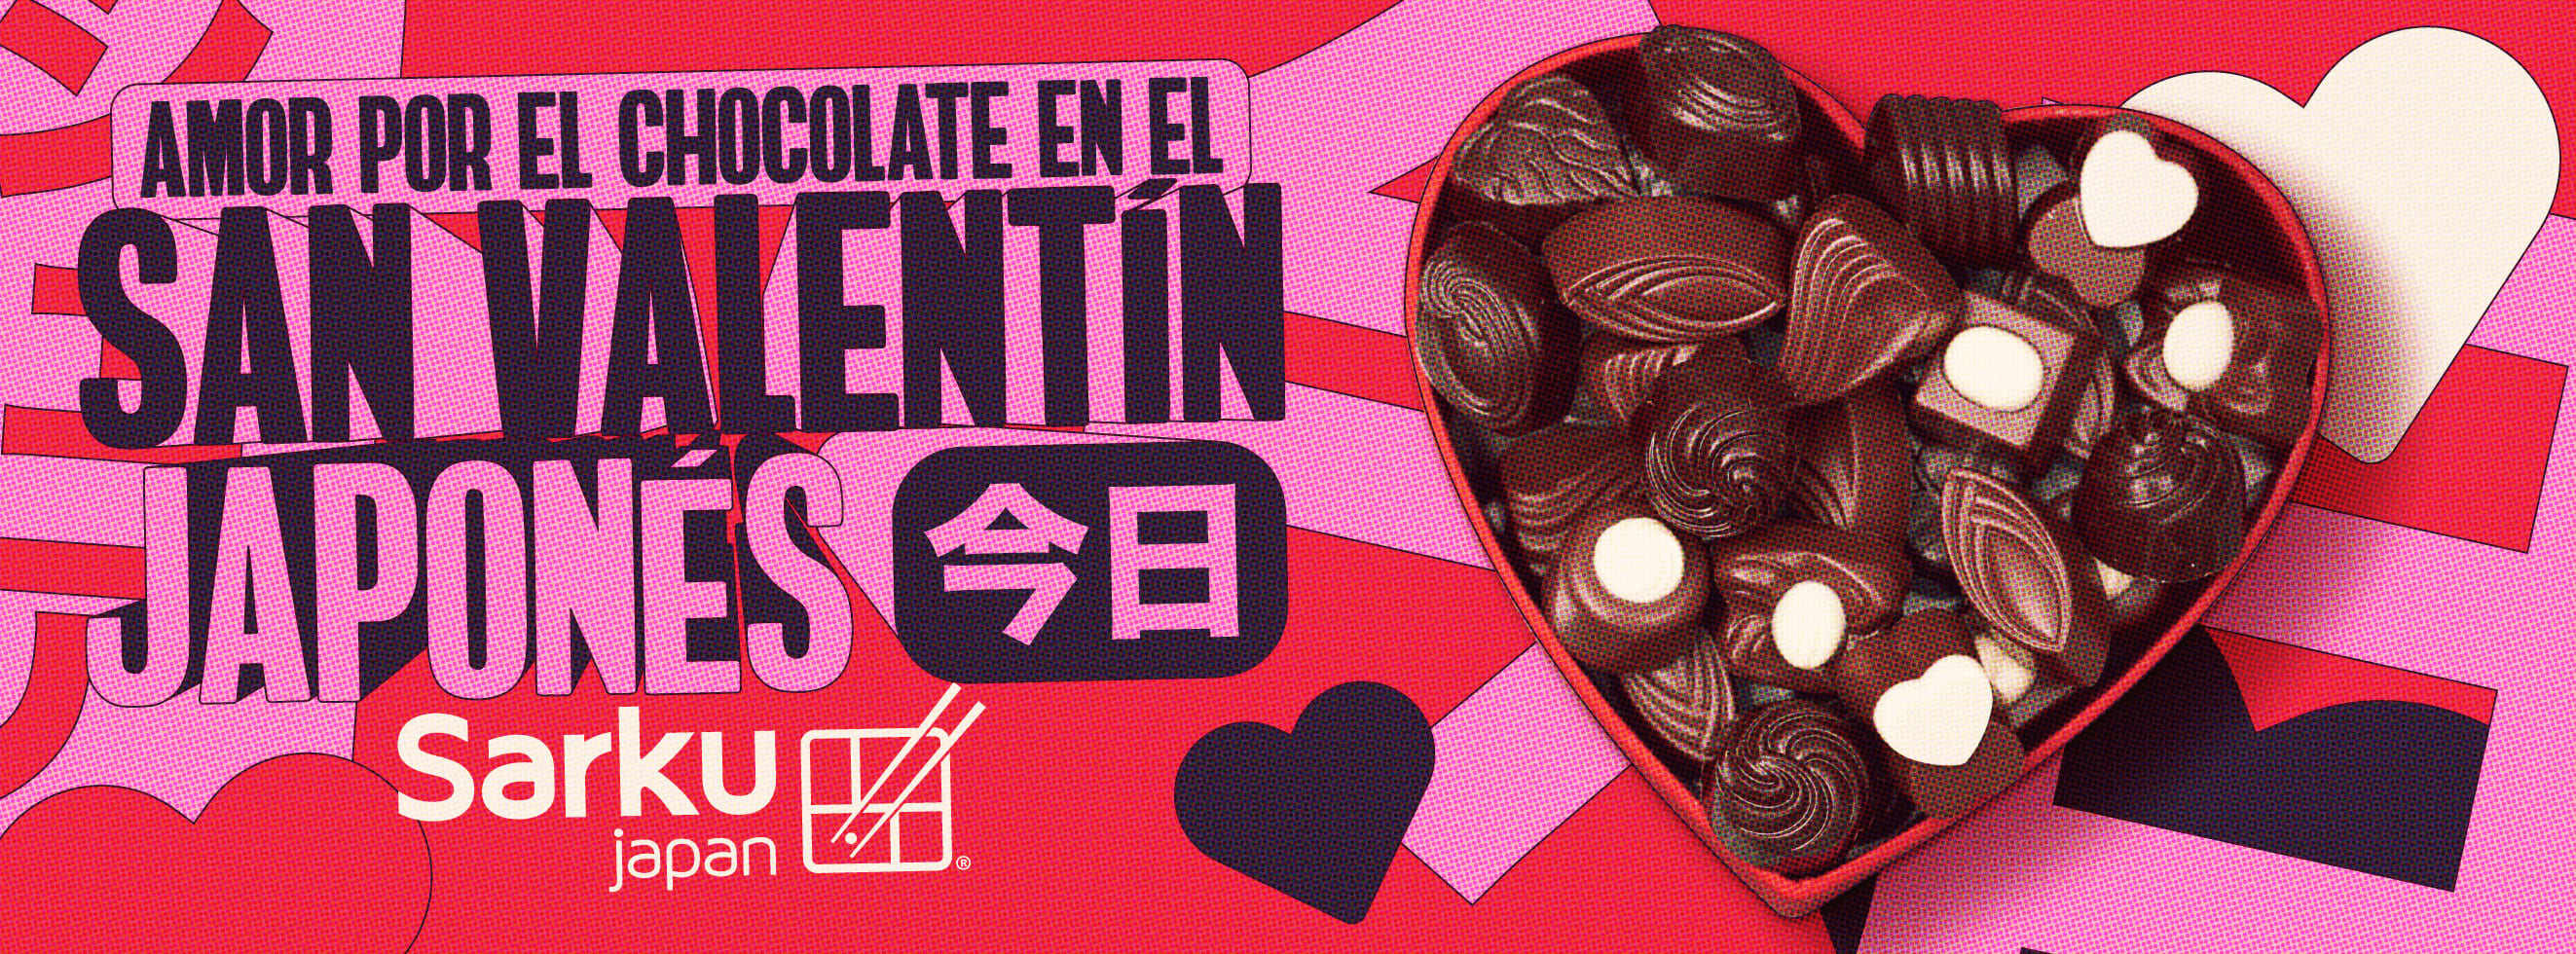 Día de San Valentín: Ideas de regalos para celebrar el día del amor -  Chócale